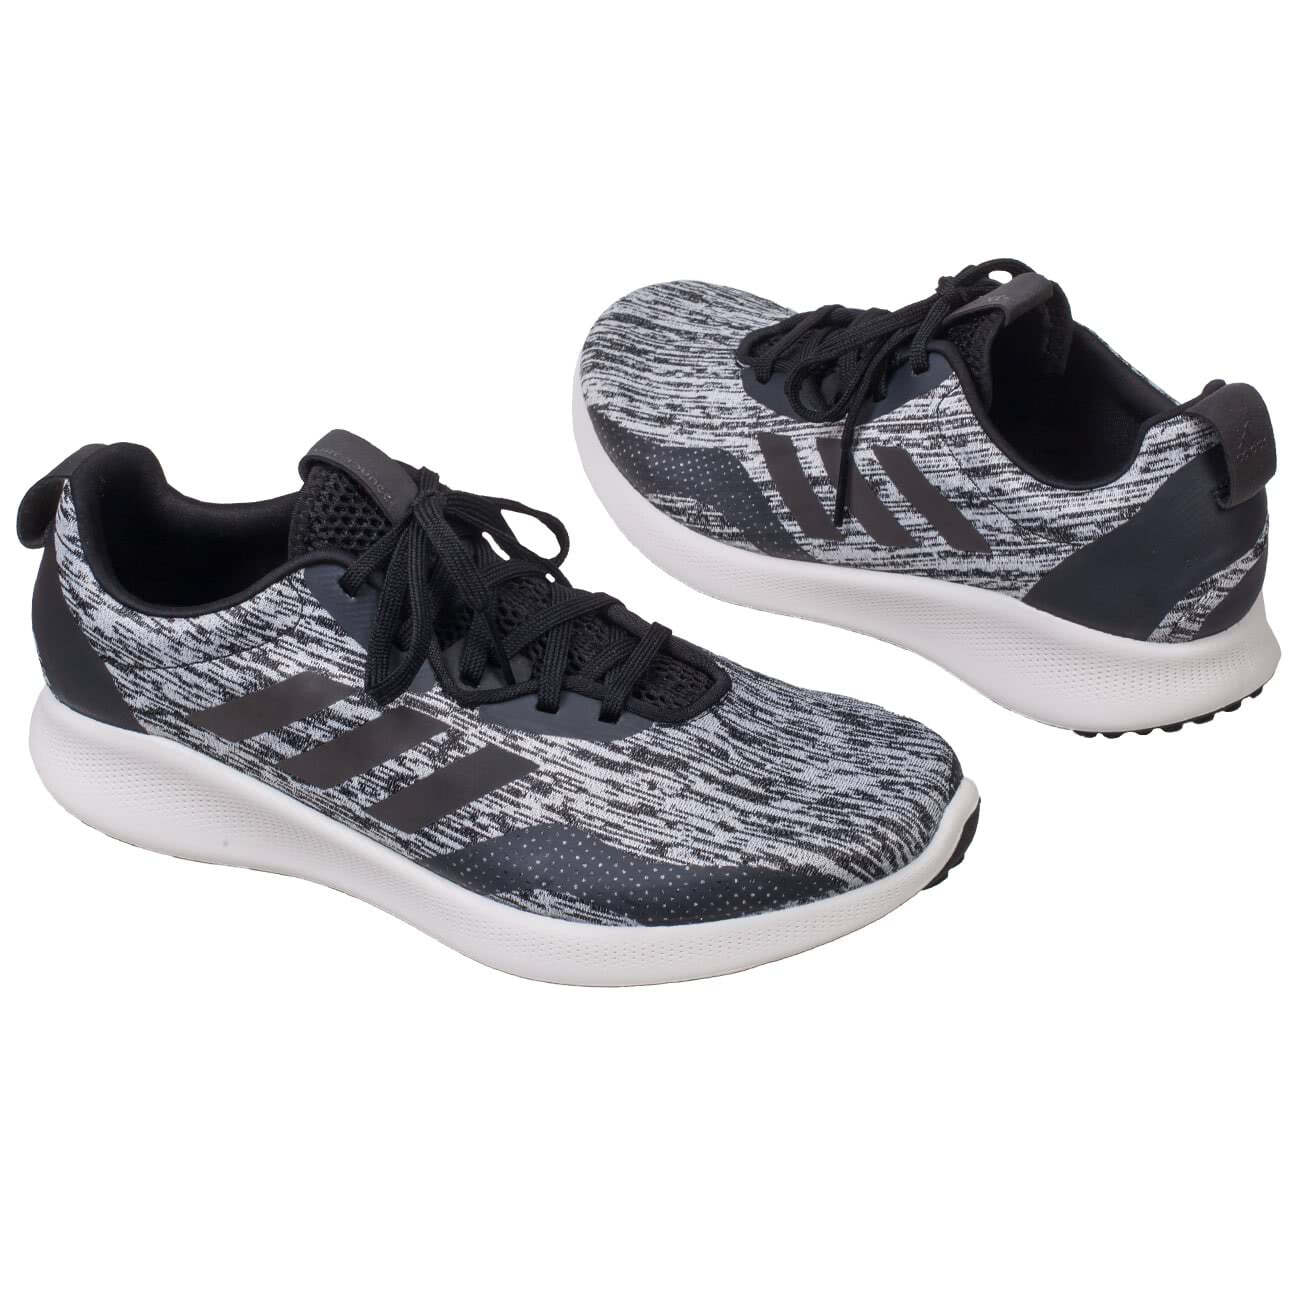 Мужские беговые кроссовки Adidas Purebounce+ серого цвета купить в интернетмагазине Kwinto